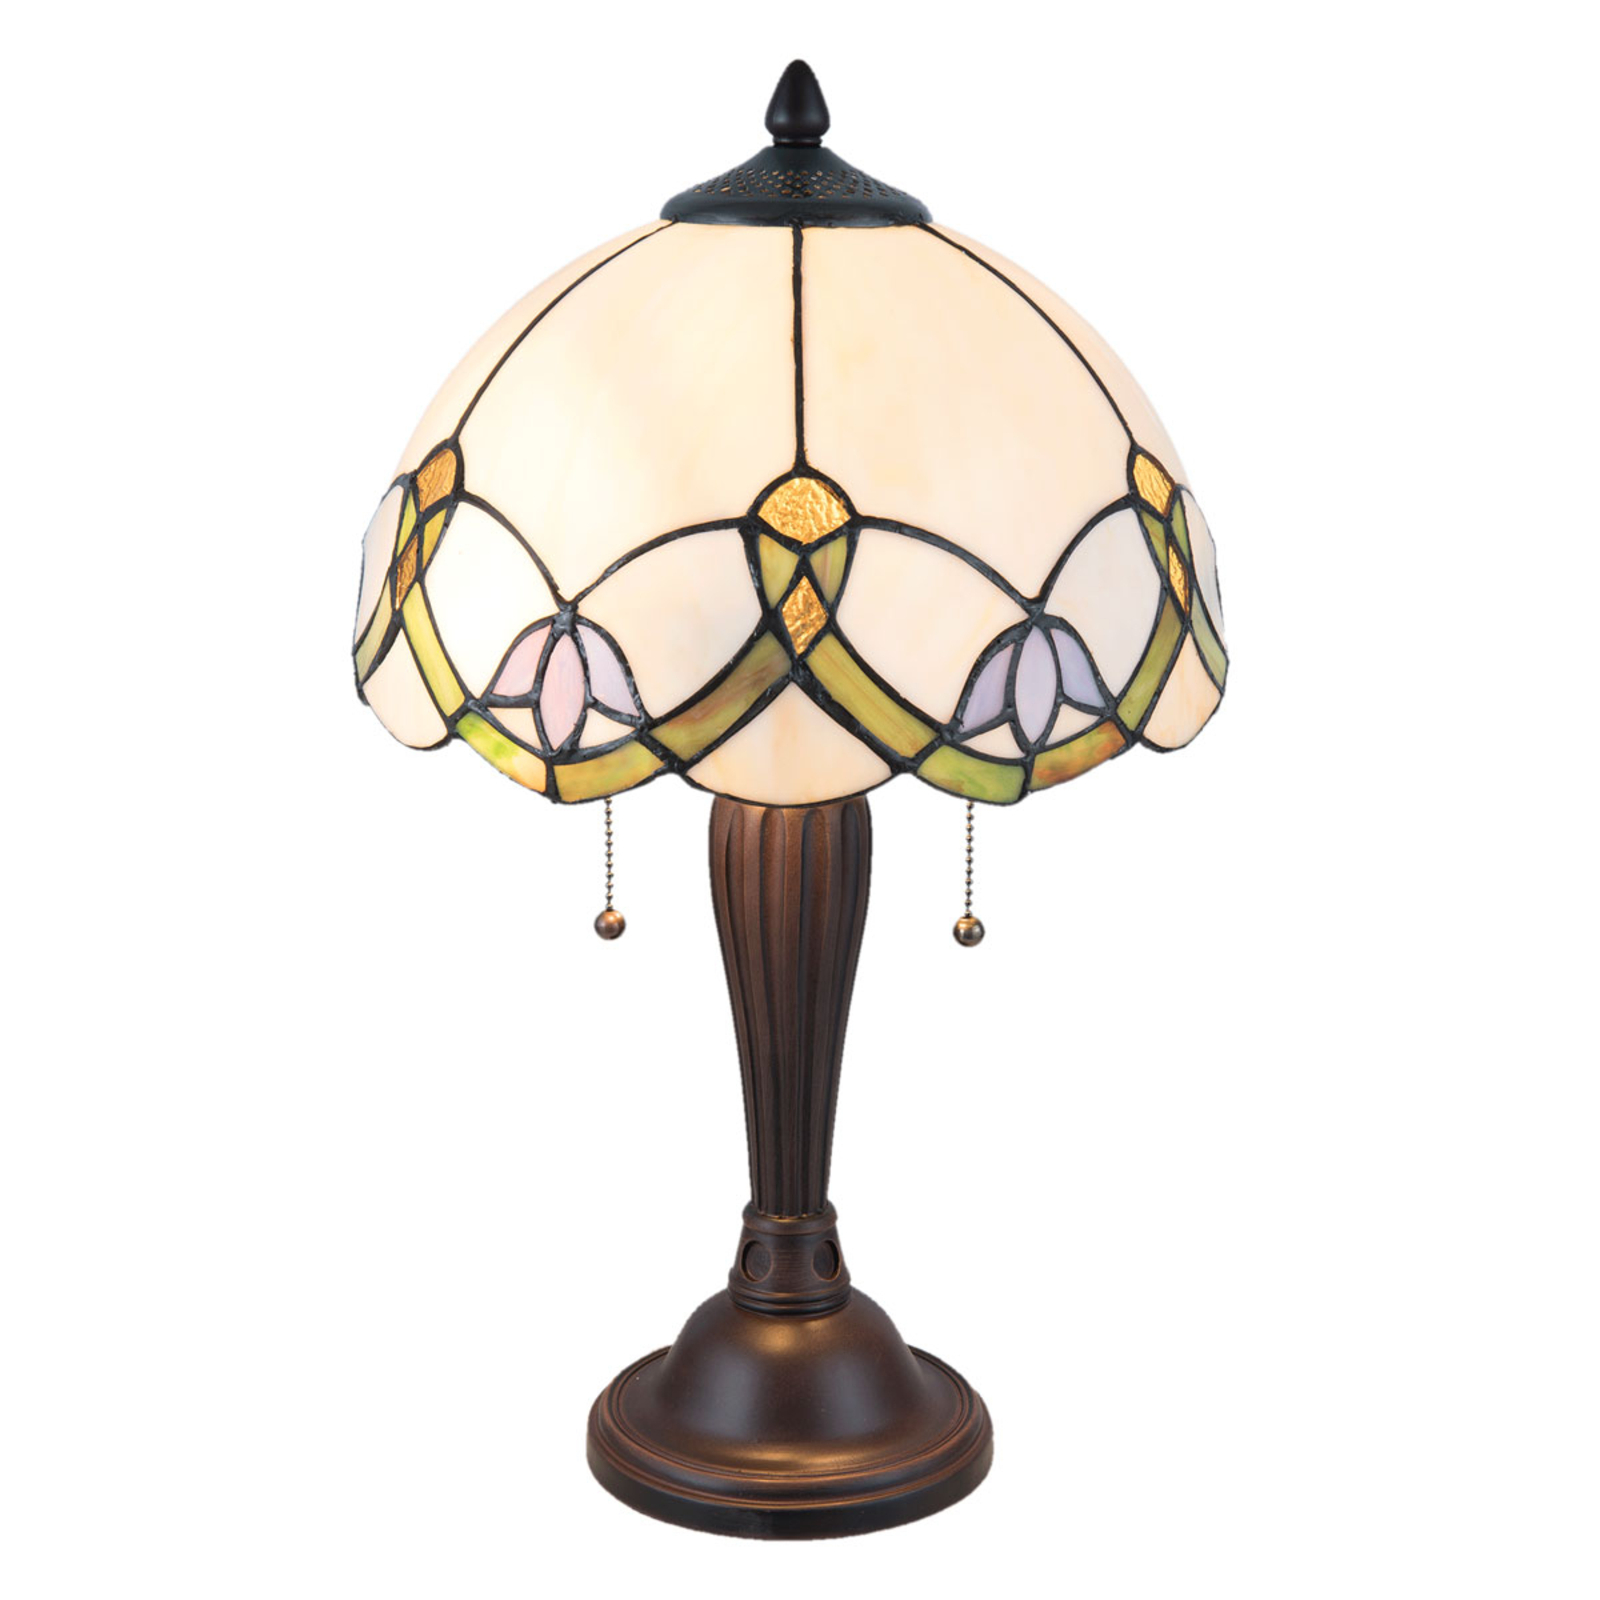 Tafellamp 5918 met wit-bont Tiffany-design